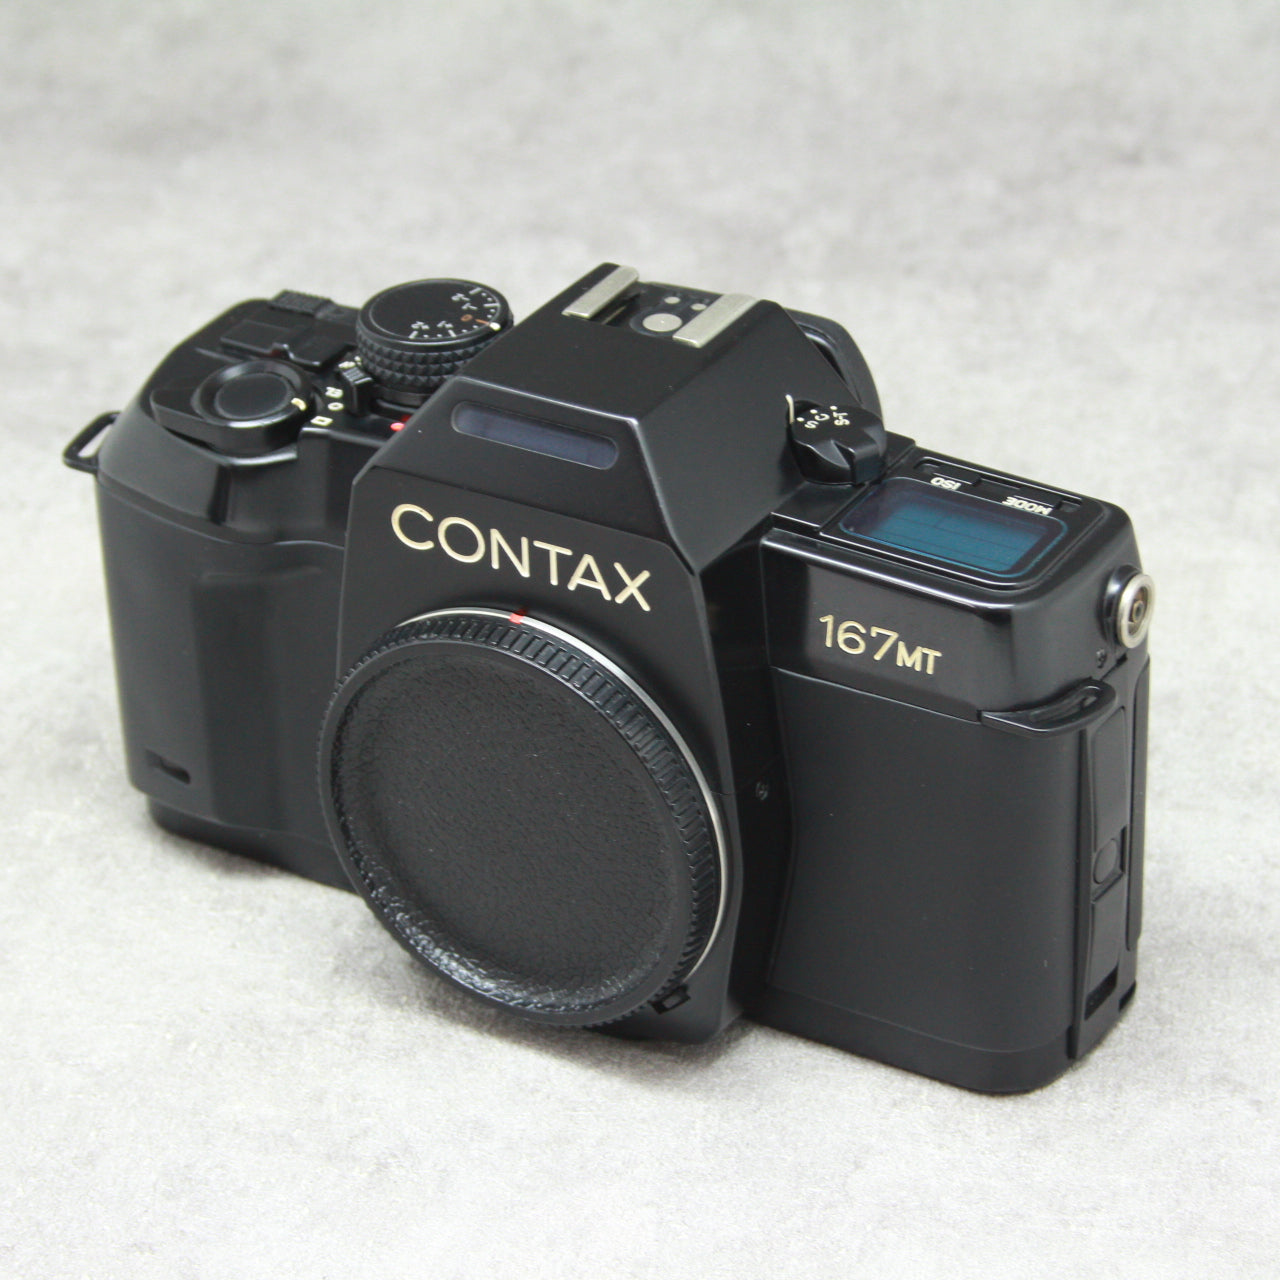 予約取寄美品 コンタックス CONTAX 167MT ボディ フィルムカメラ